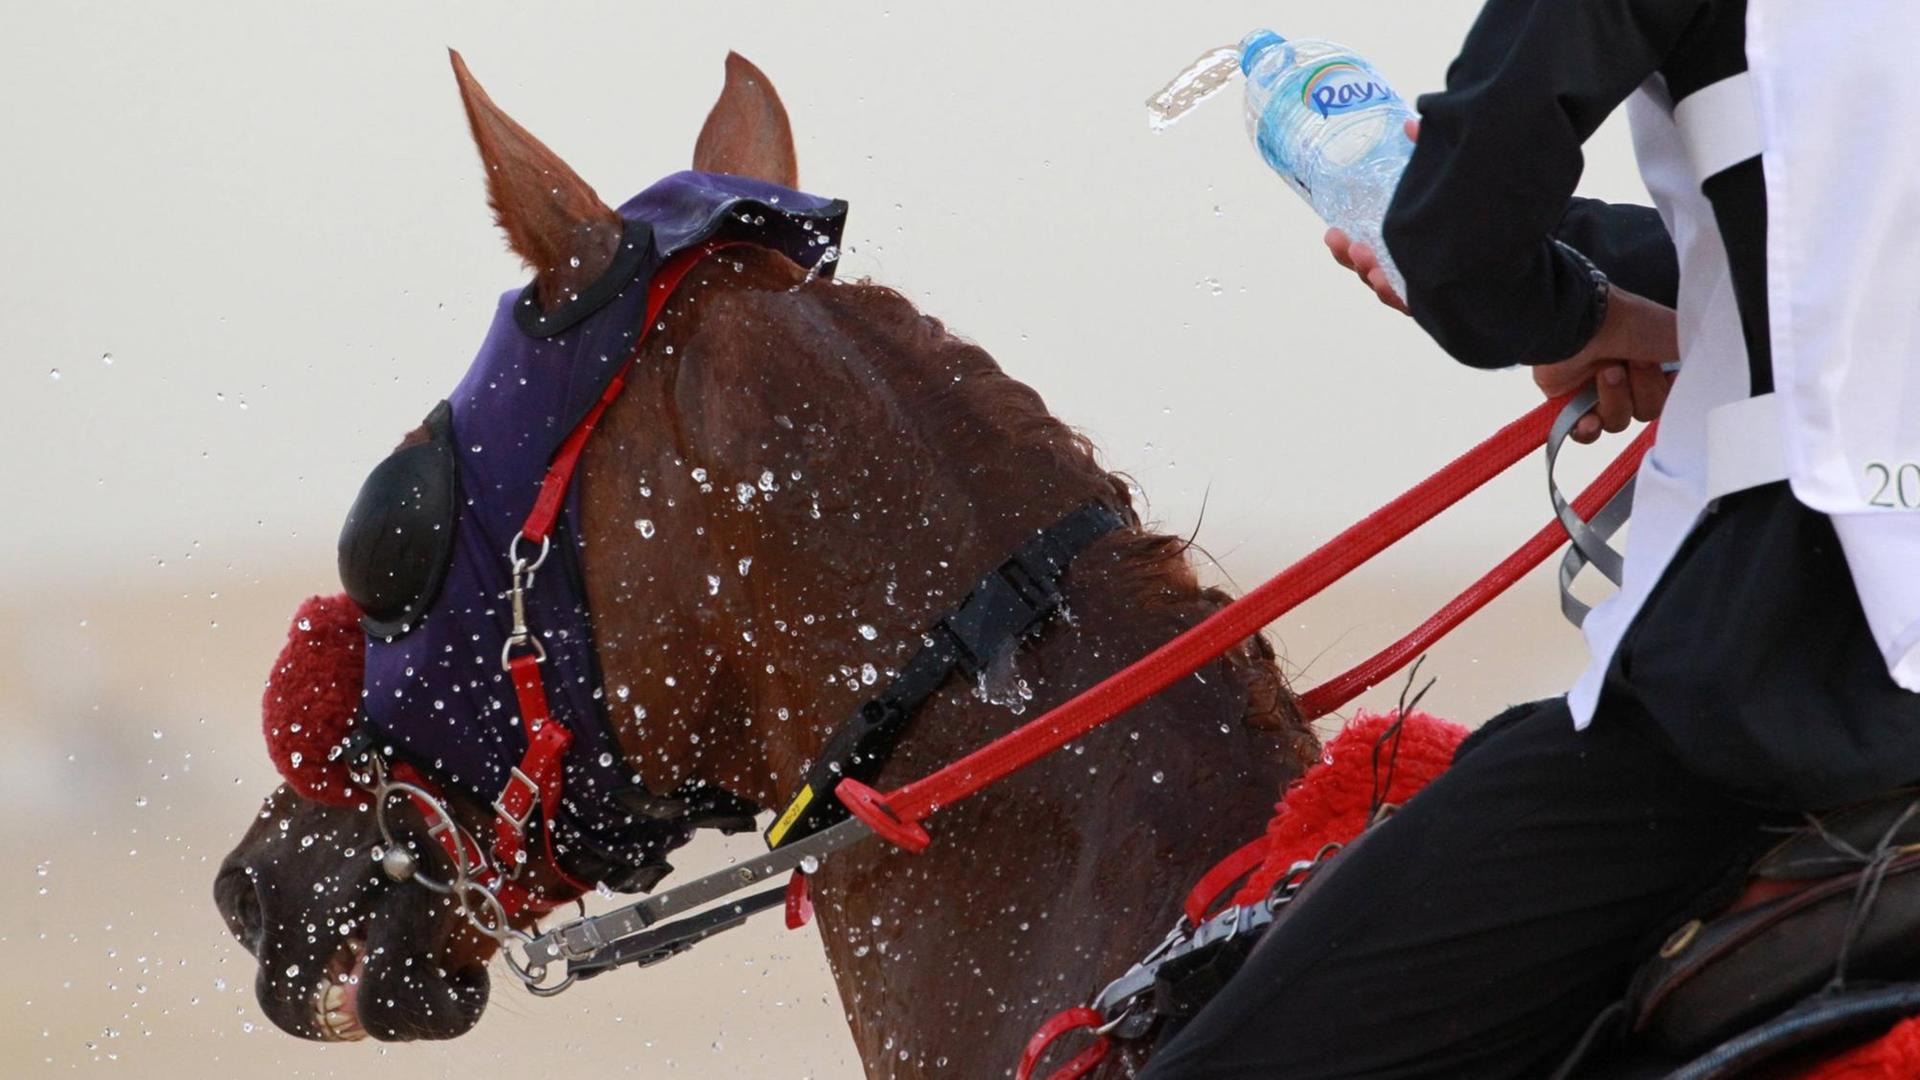 Ein Distanzreiter in der Wueste kuehlt sein Pferd mit Wasser aus einer Flasche.